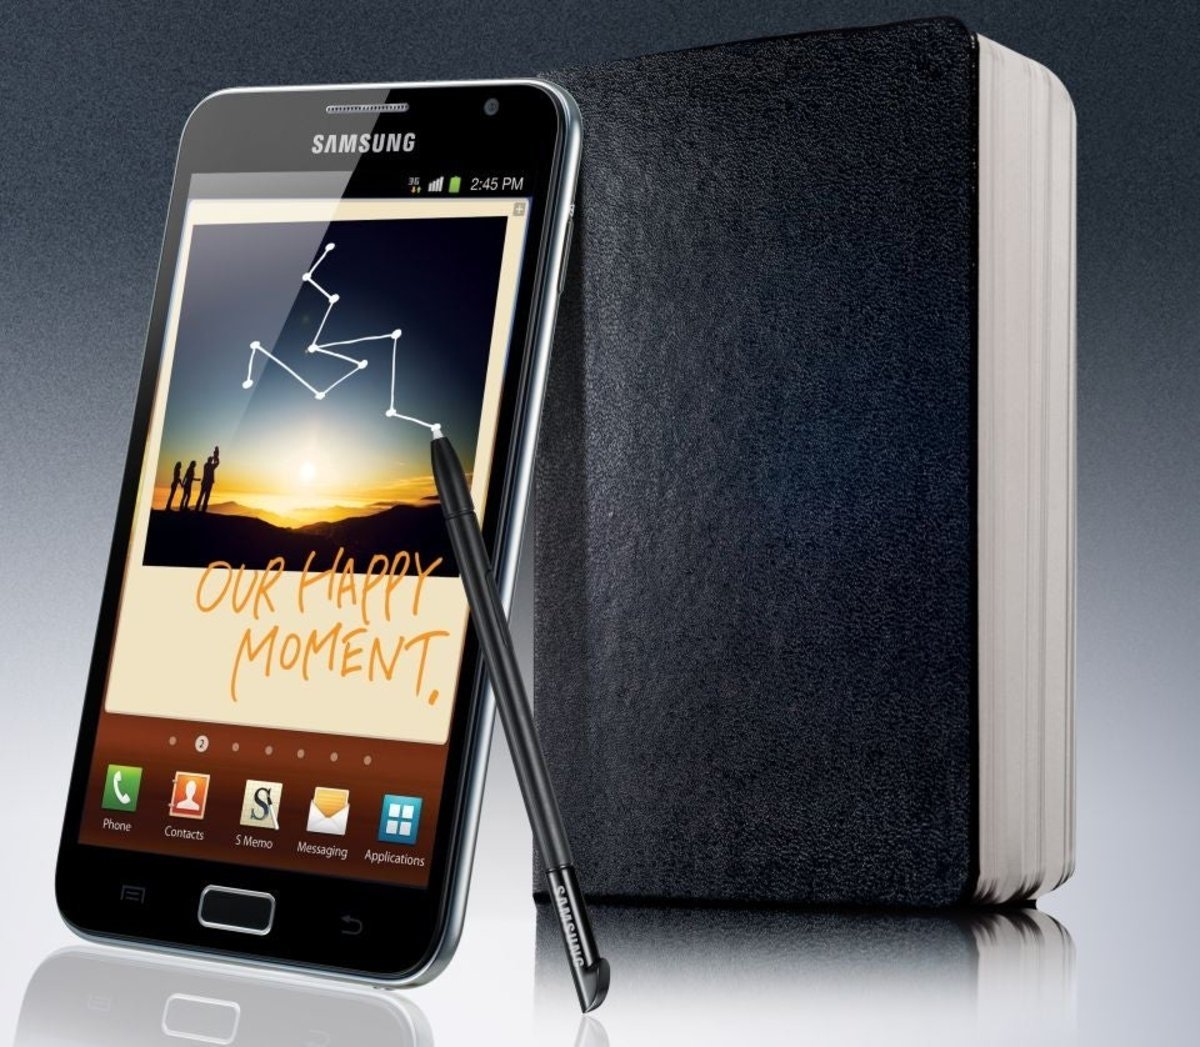 Samsung galaxy note 1. Samsung Galaxy Note n7000. Galaxy Note gt-n7000. Samsung Galaxy Note 1 n7000.